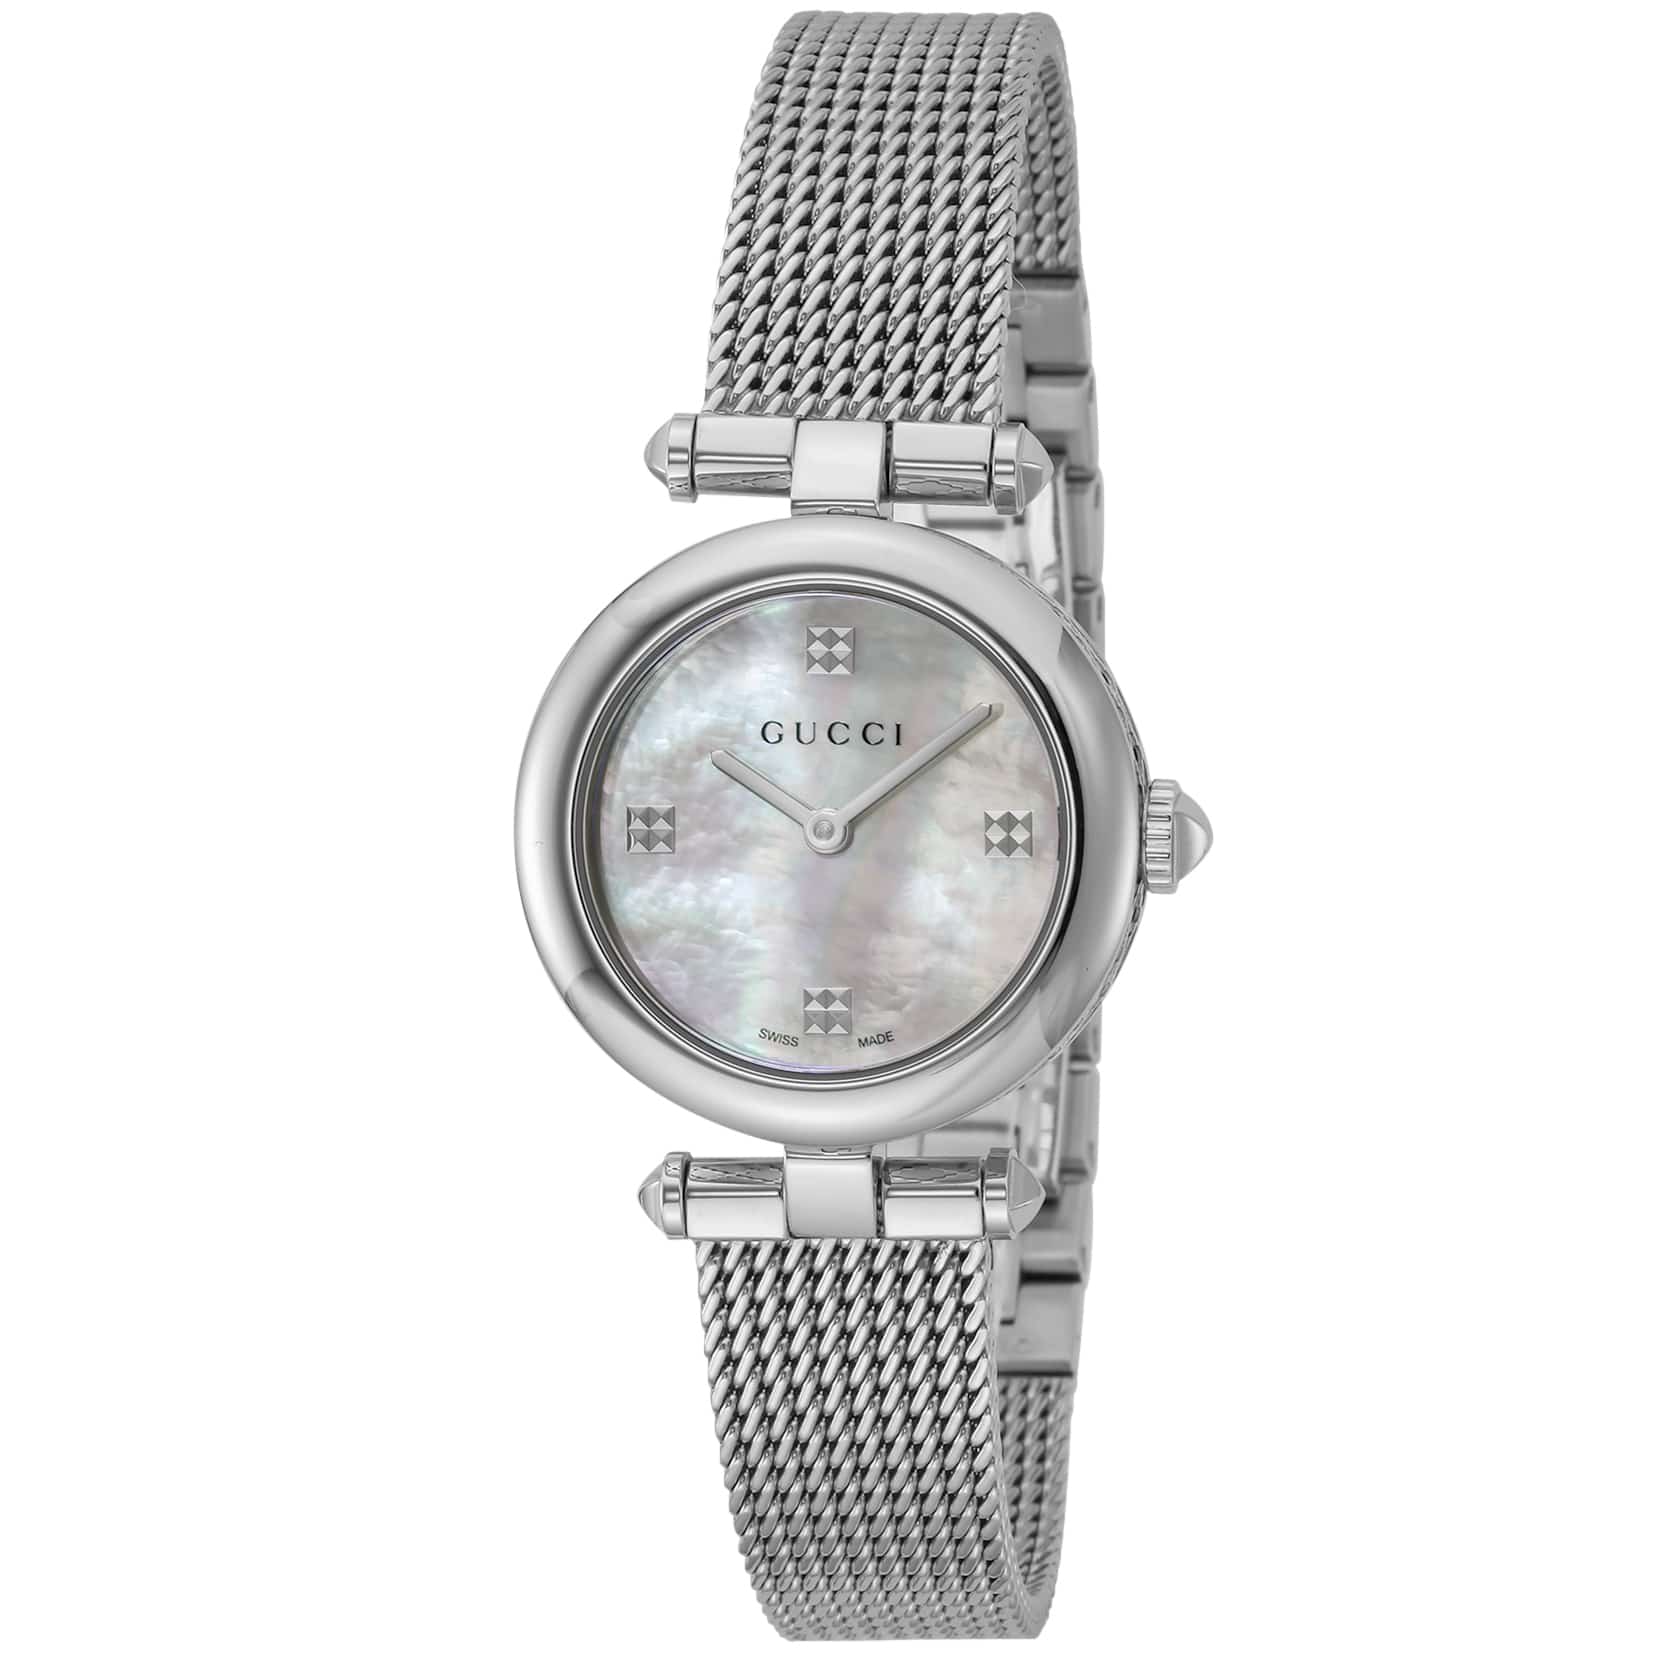 ブランドショップハピネス公式オンラインショップグッチ GUCCI 腕時計 レディース YA141504 ディアマンティッシマ: 腕時計